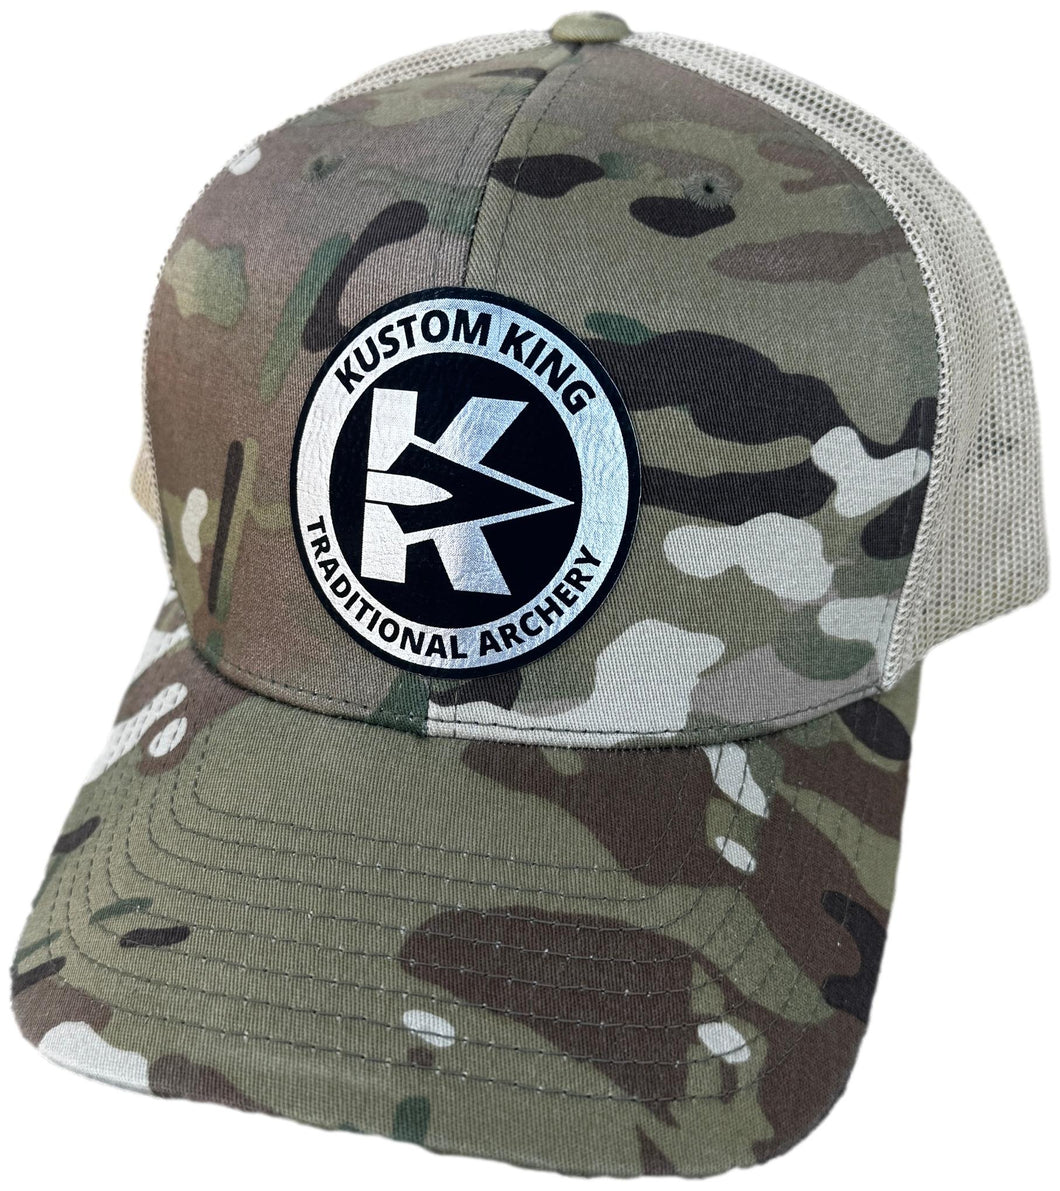 Kustom King Trucker Hat - Camo and Desert Tan